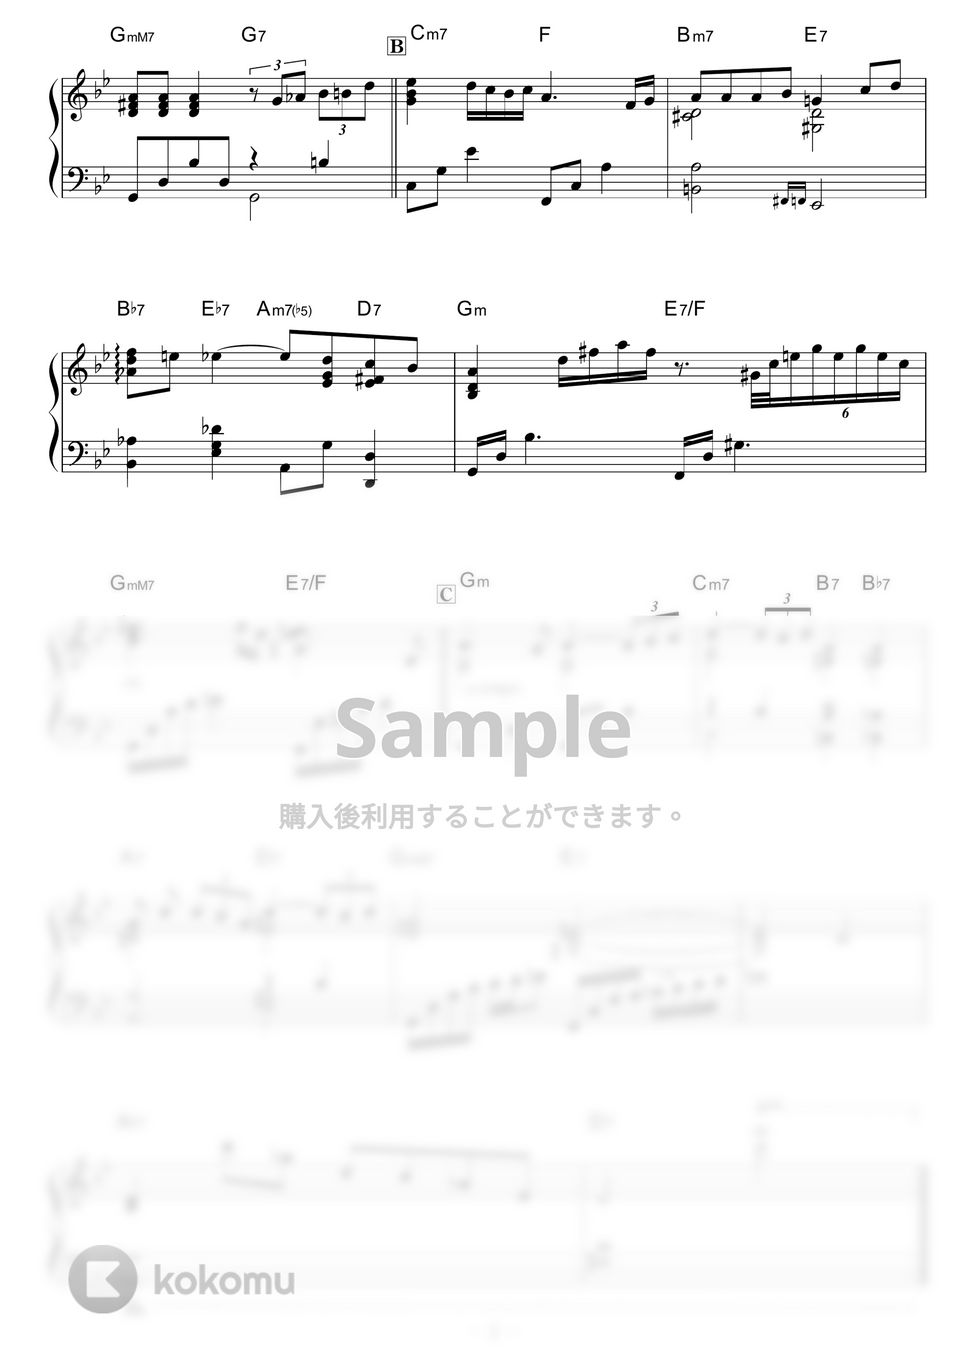 大野雄二 - 愛のテーマ (ルパン三世より) by piano*score